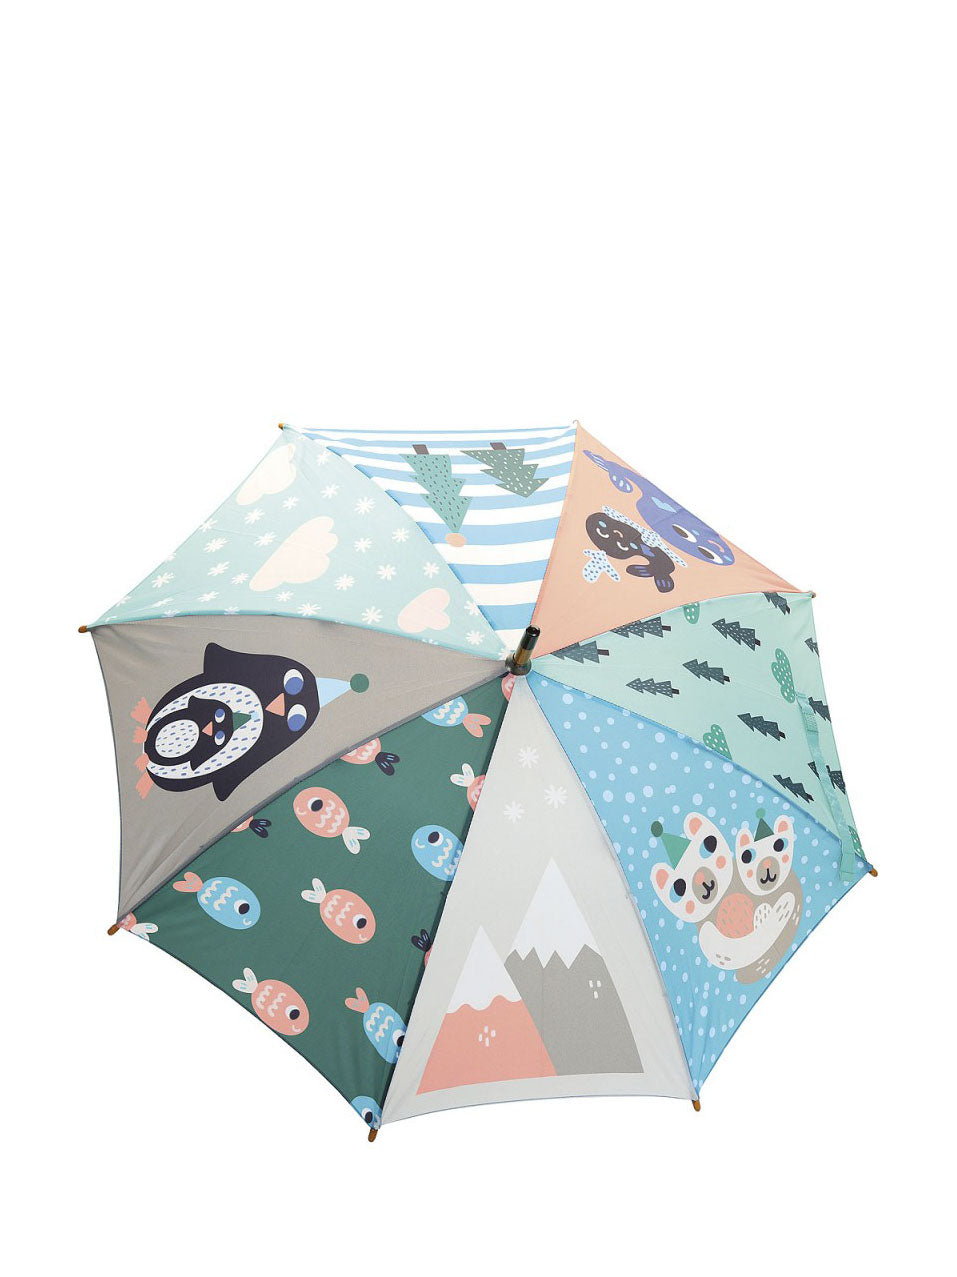 Iceland umbrella, design by M. Carlslund